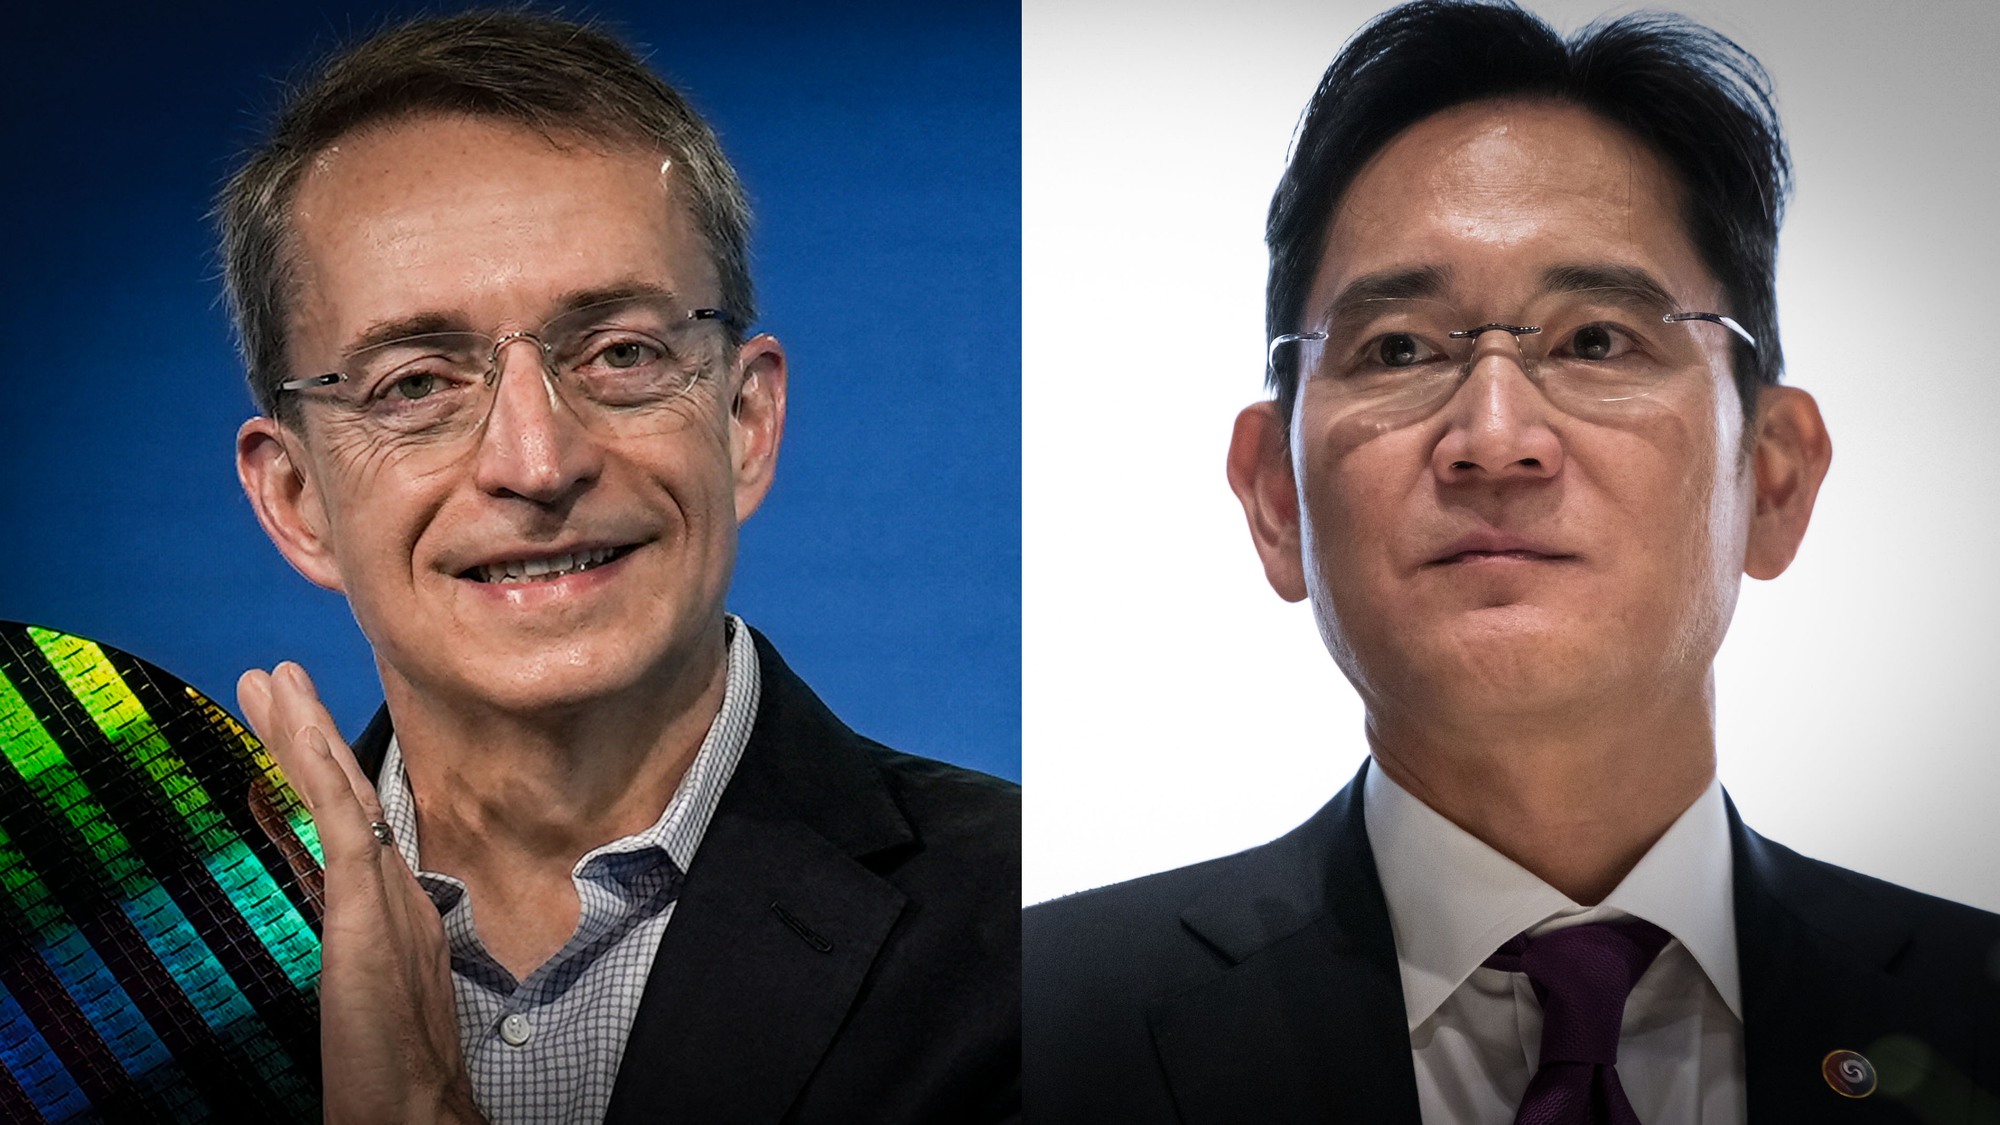 Giám đốc điều hành Intel Pat Gelsinger (trái) và Phó Chủ tịch Samsung Lee Jae-yong (phải) đã gặp nhau sau khi Tổng thống Joe Biden gần đây nhấn mạnh sự cần thiết của quan hệ đối tác công nghệ giữa Mỹ và Hàn Quốc. Ảnh: @AFP.